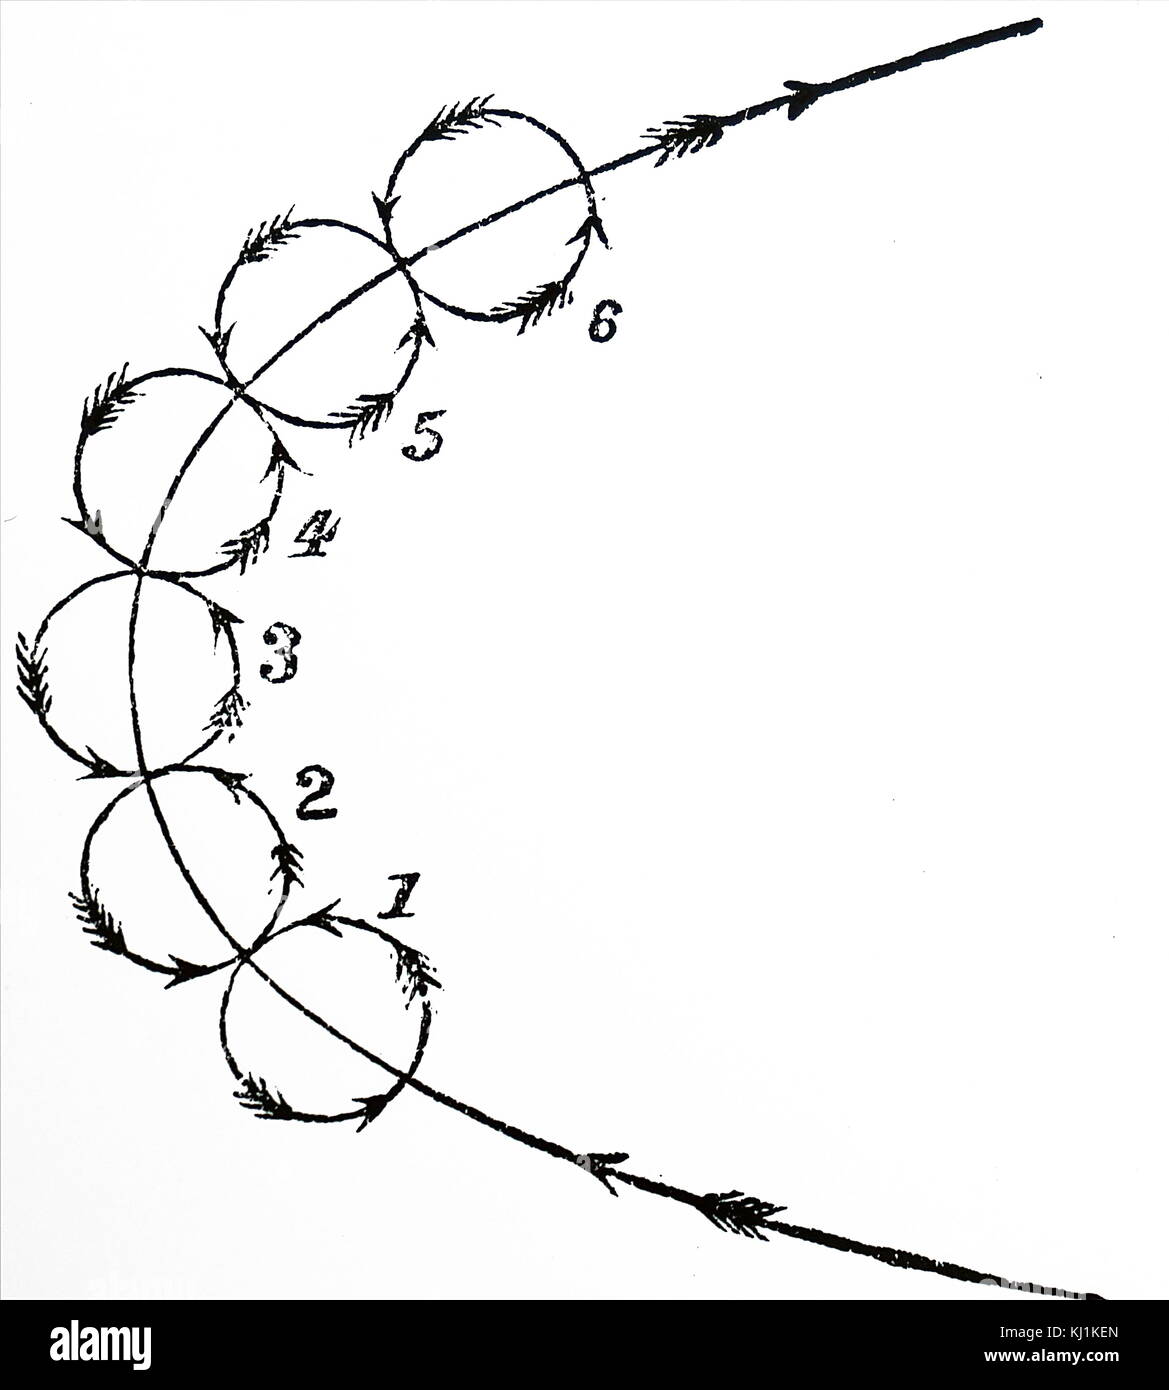 Diagrama que muestra cómo un torbellino de polvo gira y gira. Fecha del siglo XIX Foto de stock